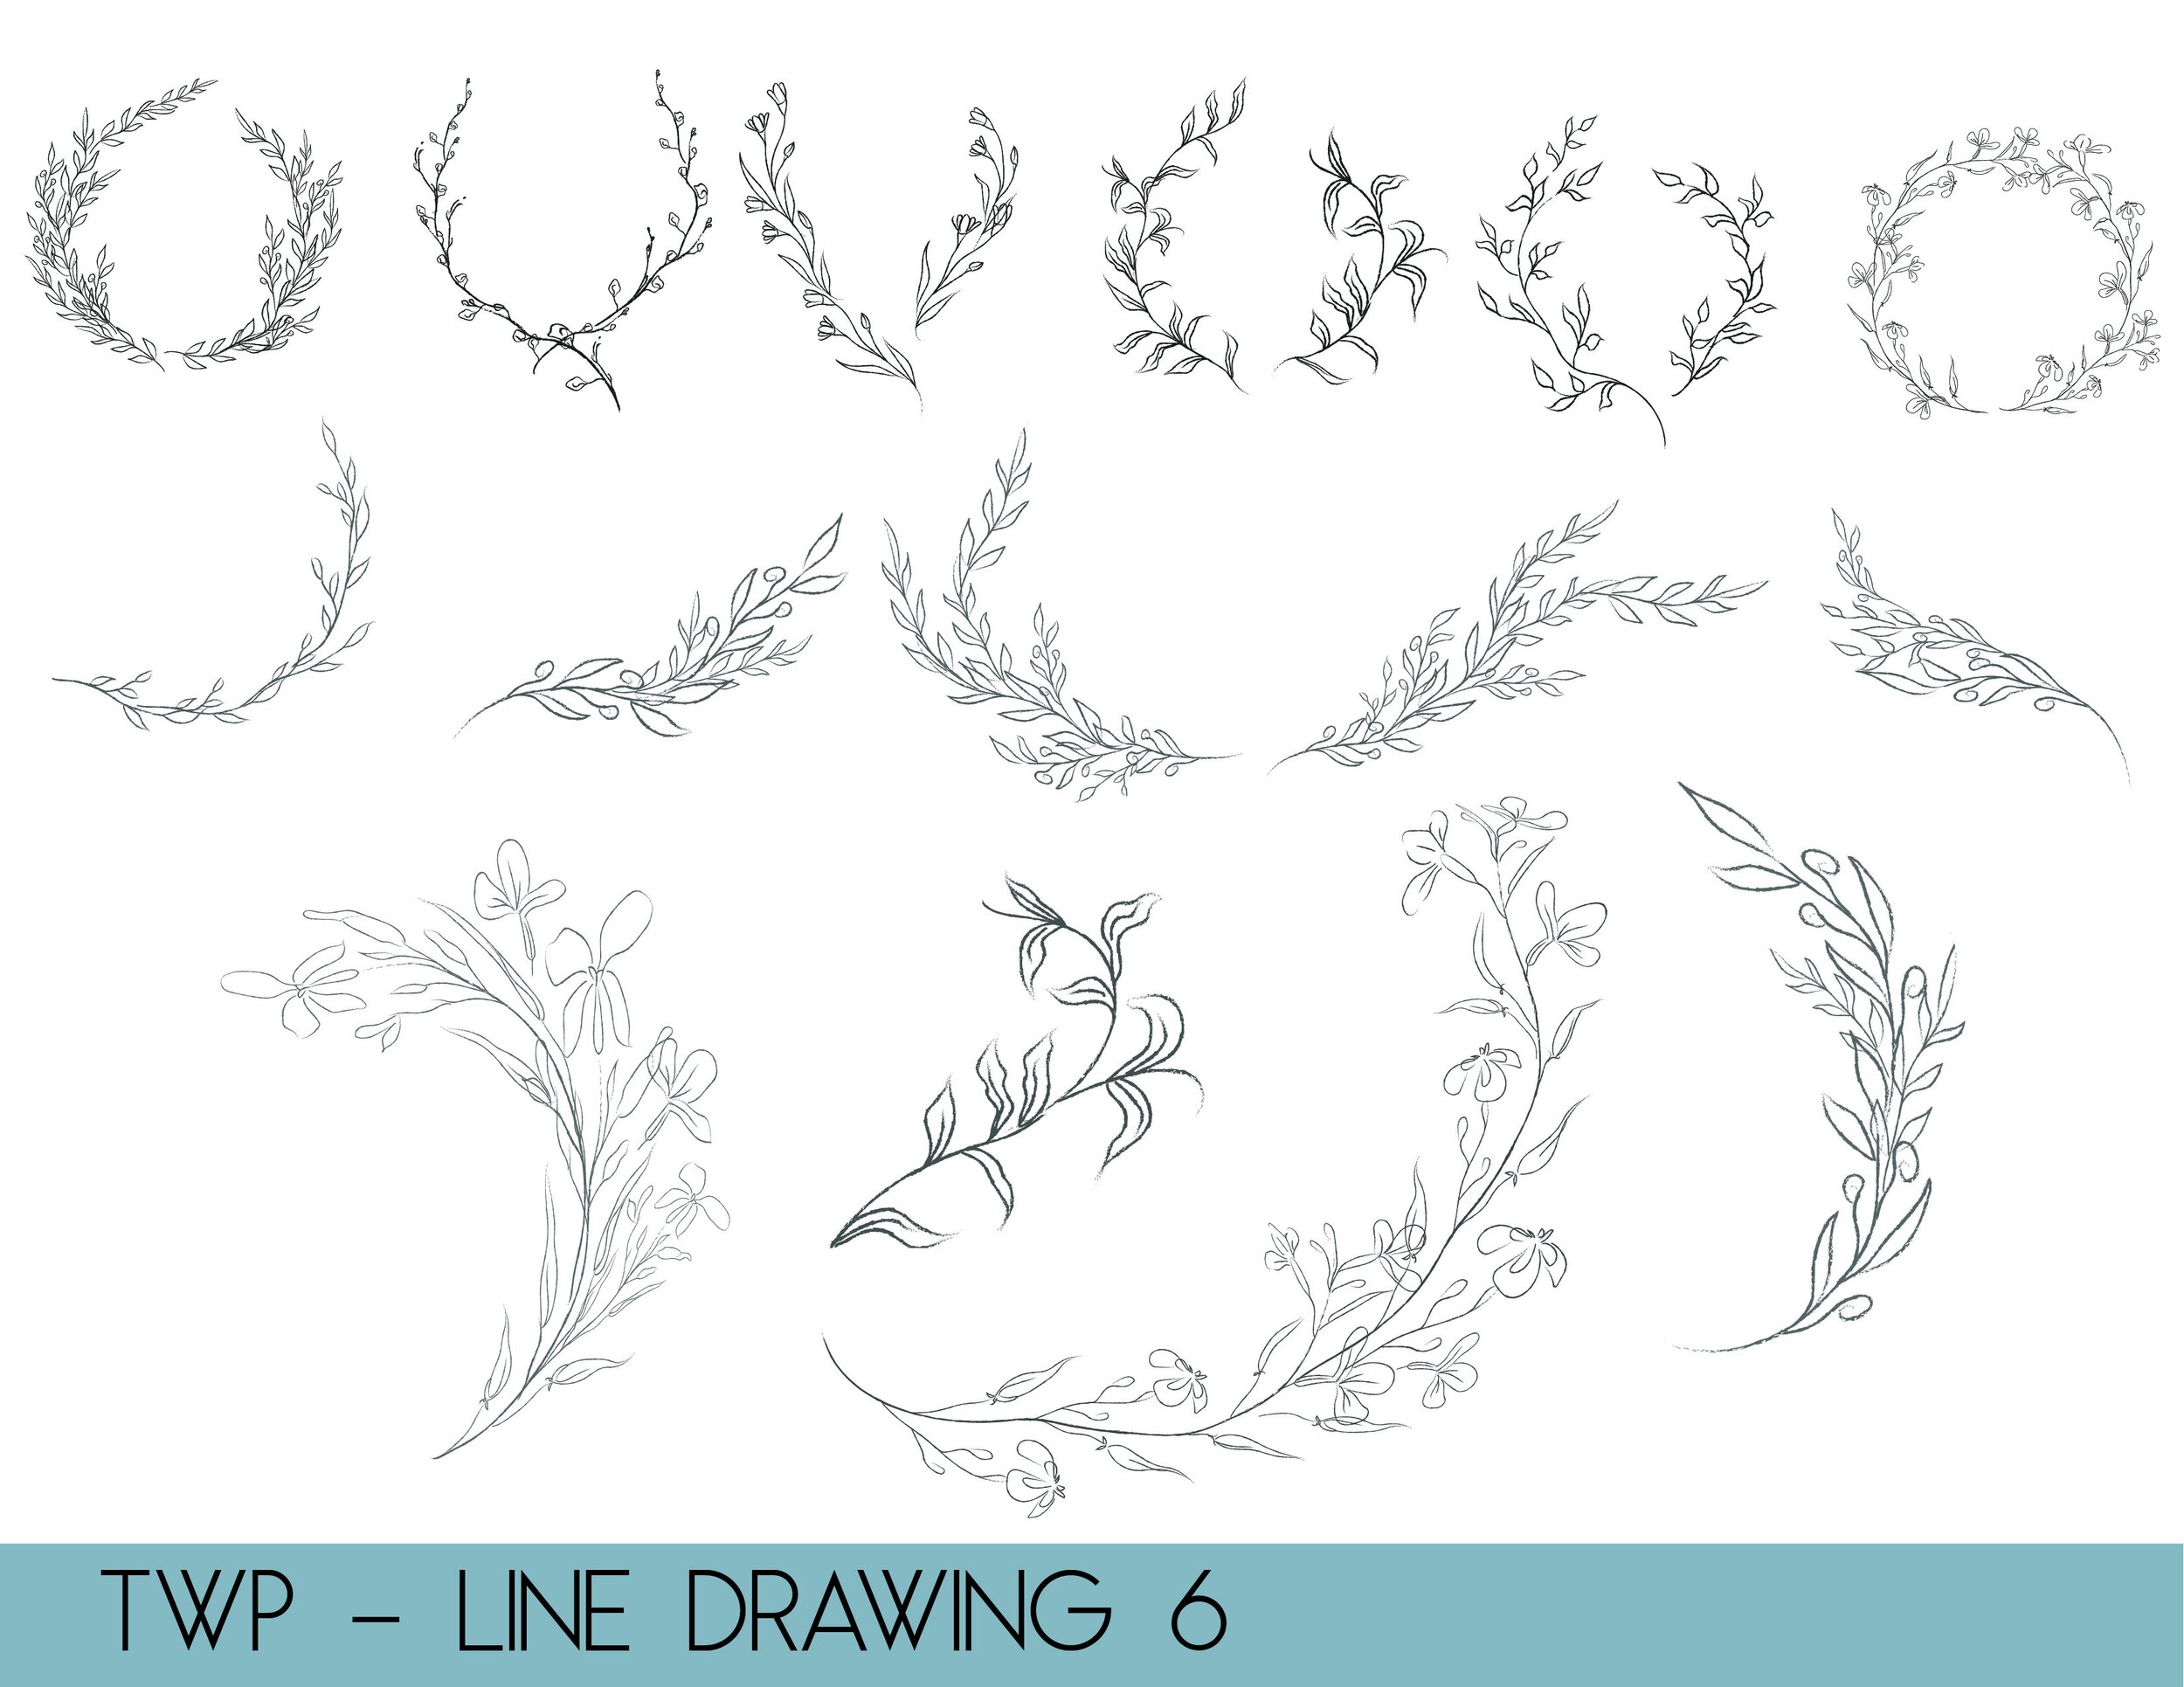 line drawings - website6.jpg